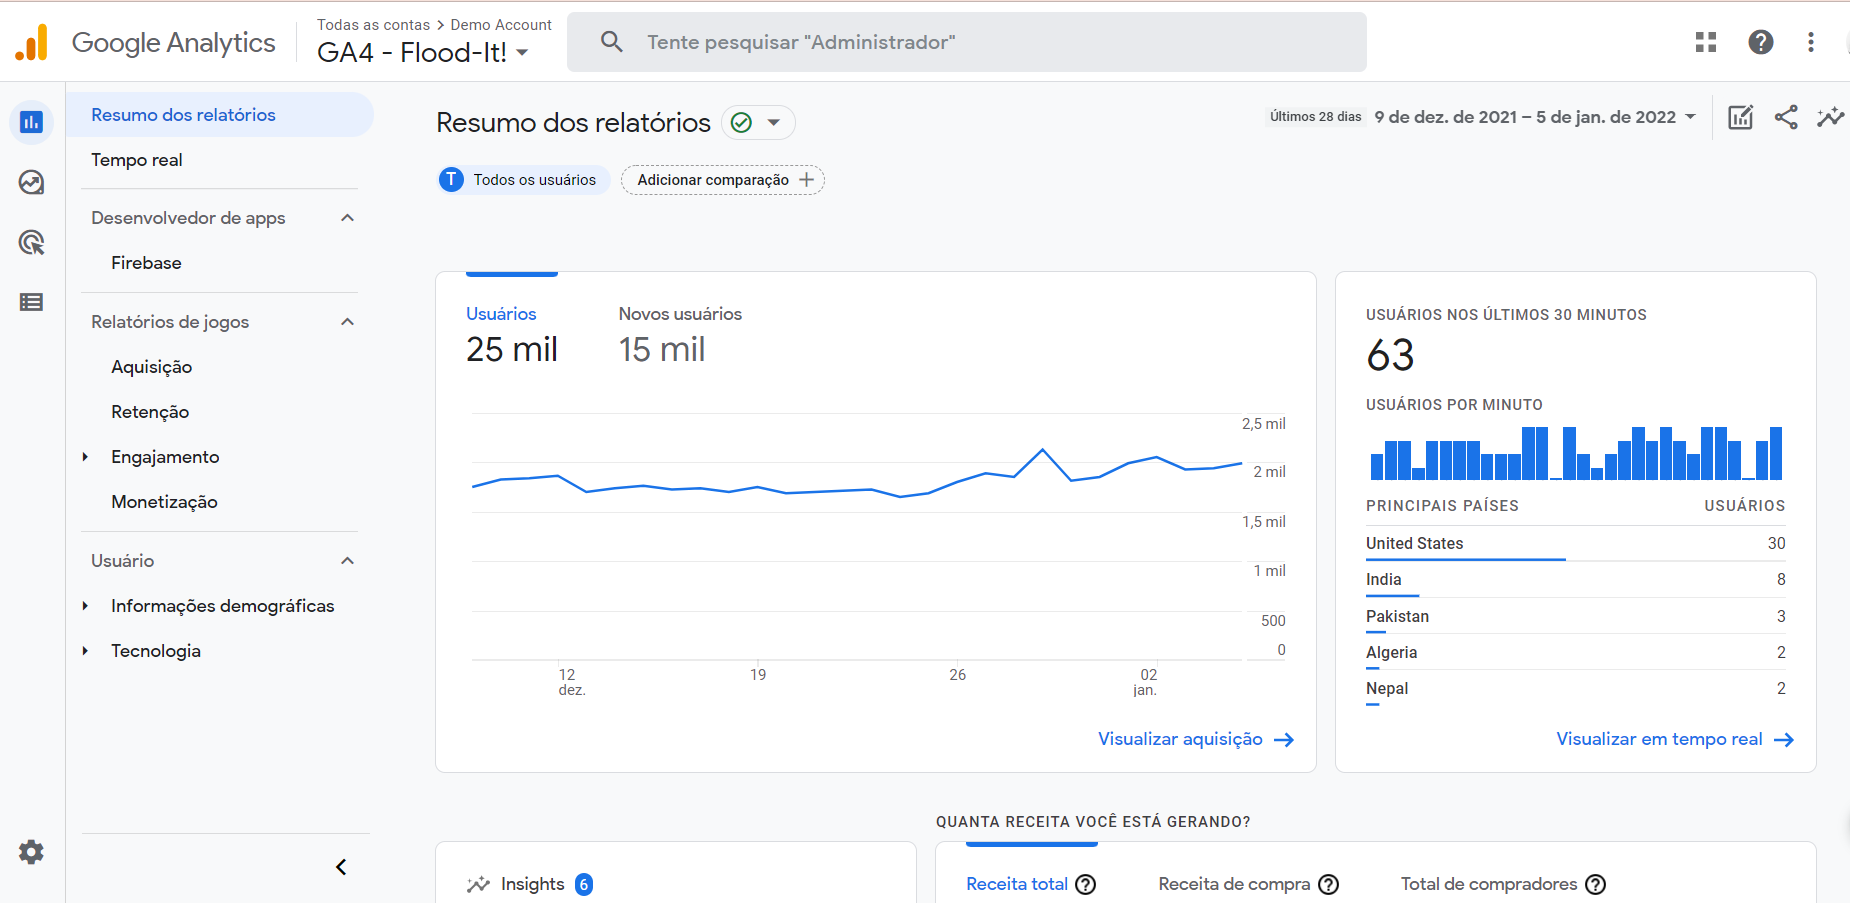 Captura de tela da interface da página inicial do Google Analytics 4 em que aparecem as ferramentas e gráficos indicando número de usuários, número de novos usuários, número de usuários ativos nos últimos 30 minutos, os países em que os acessos foram registrados e o quanto de receita a conta está gerando.